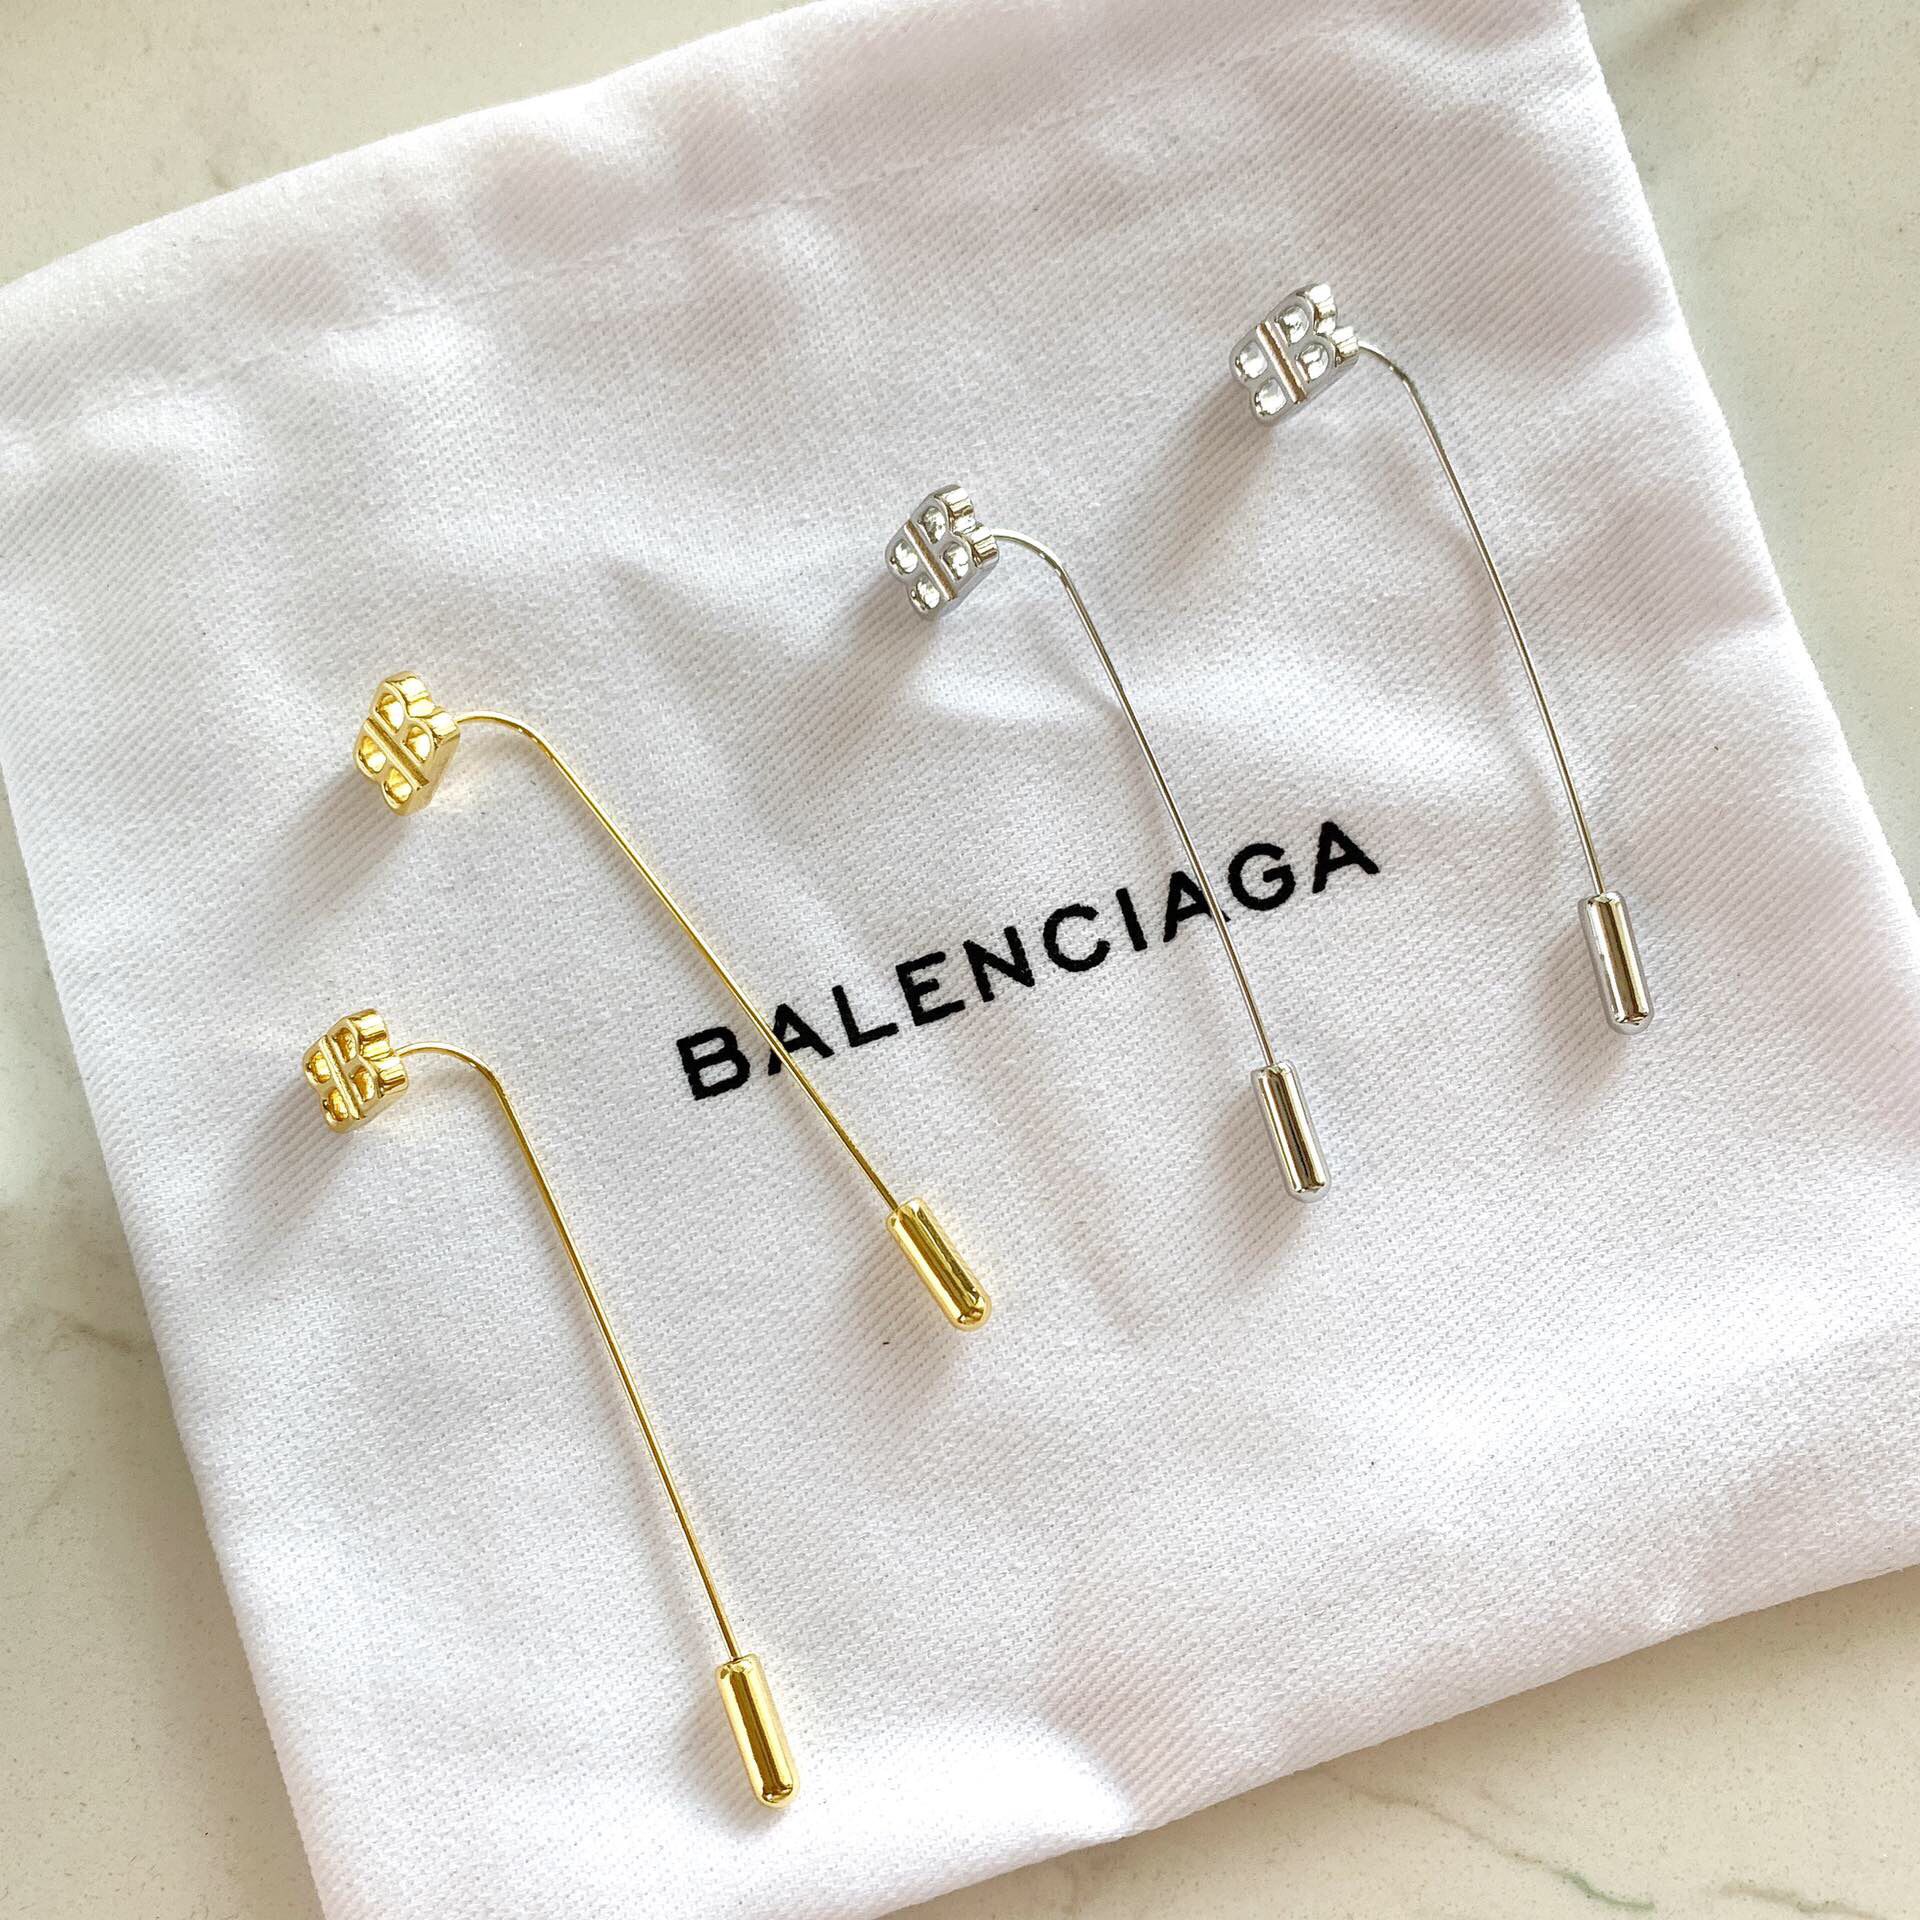 复刻巴黎世家女士耳环 巴黎世家 Balenciaga长款双B字母 耳钉耳环 复刻巴黎世家耳环 